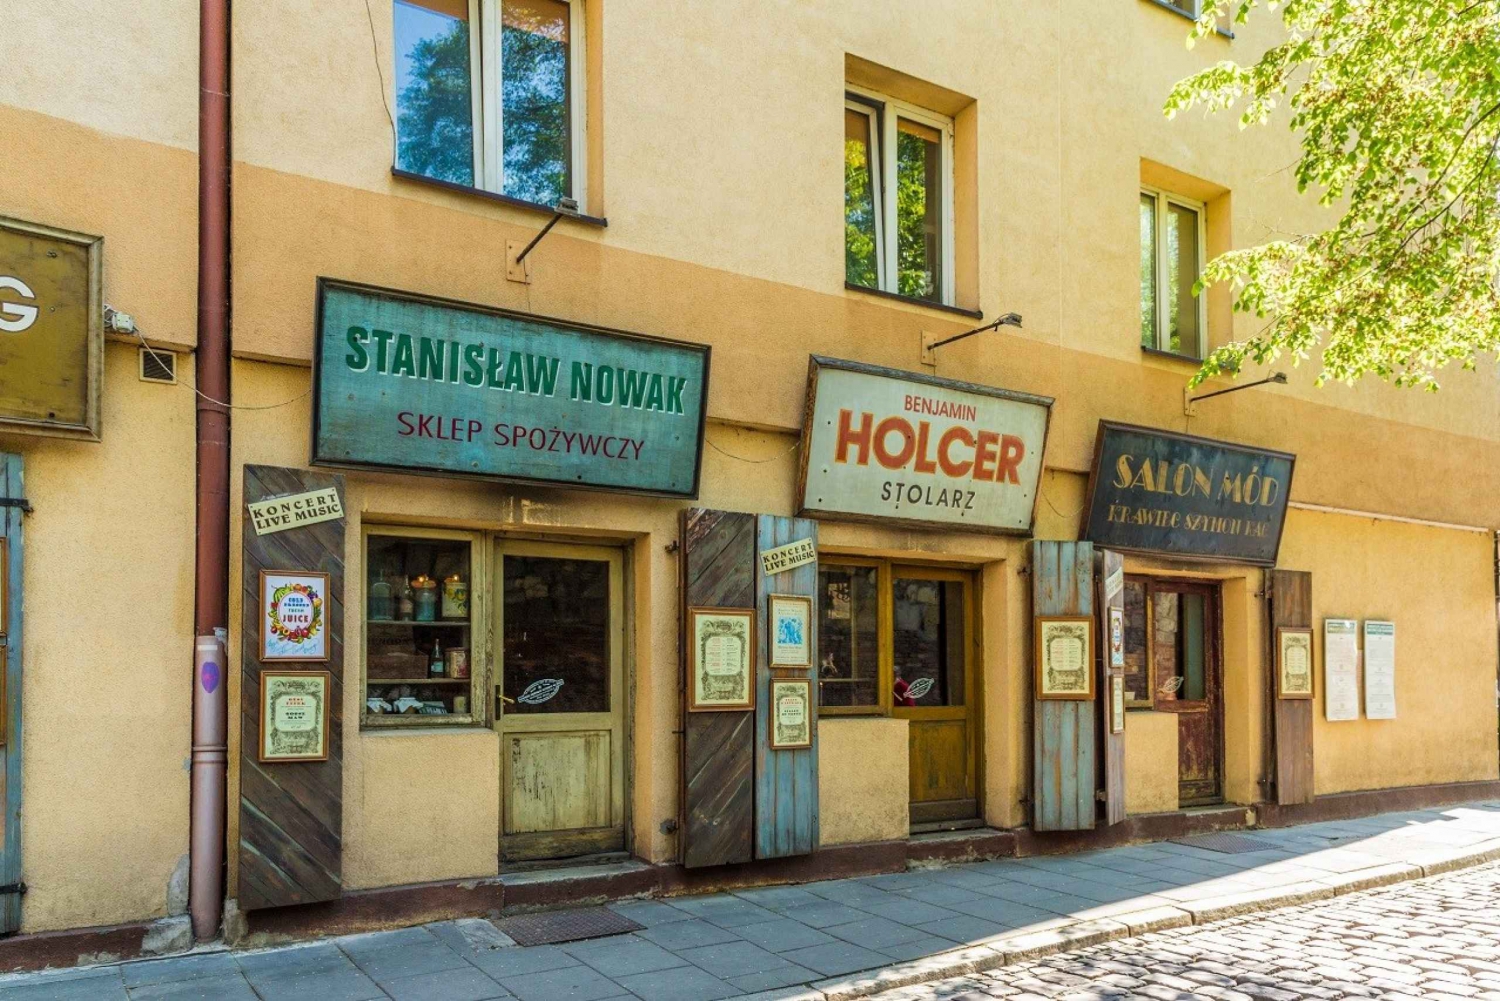 Kraków: 3-Day Jewish Quarter, Wieliczka, and Auschwitz Tour